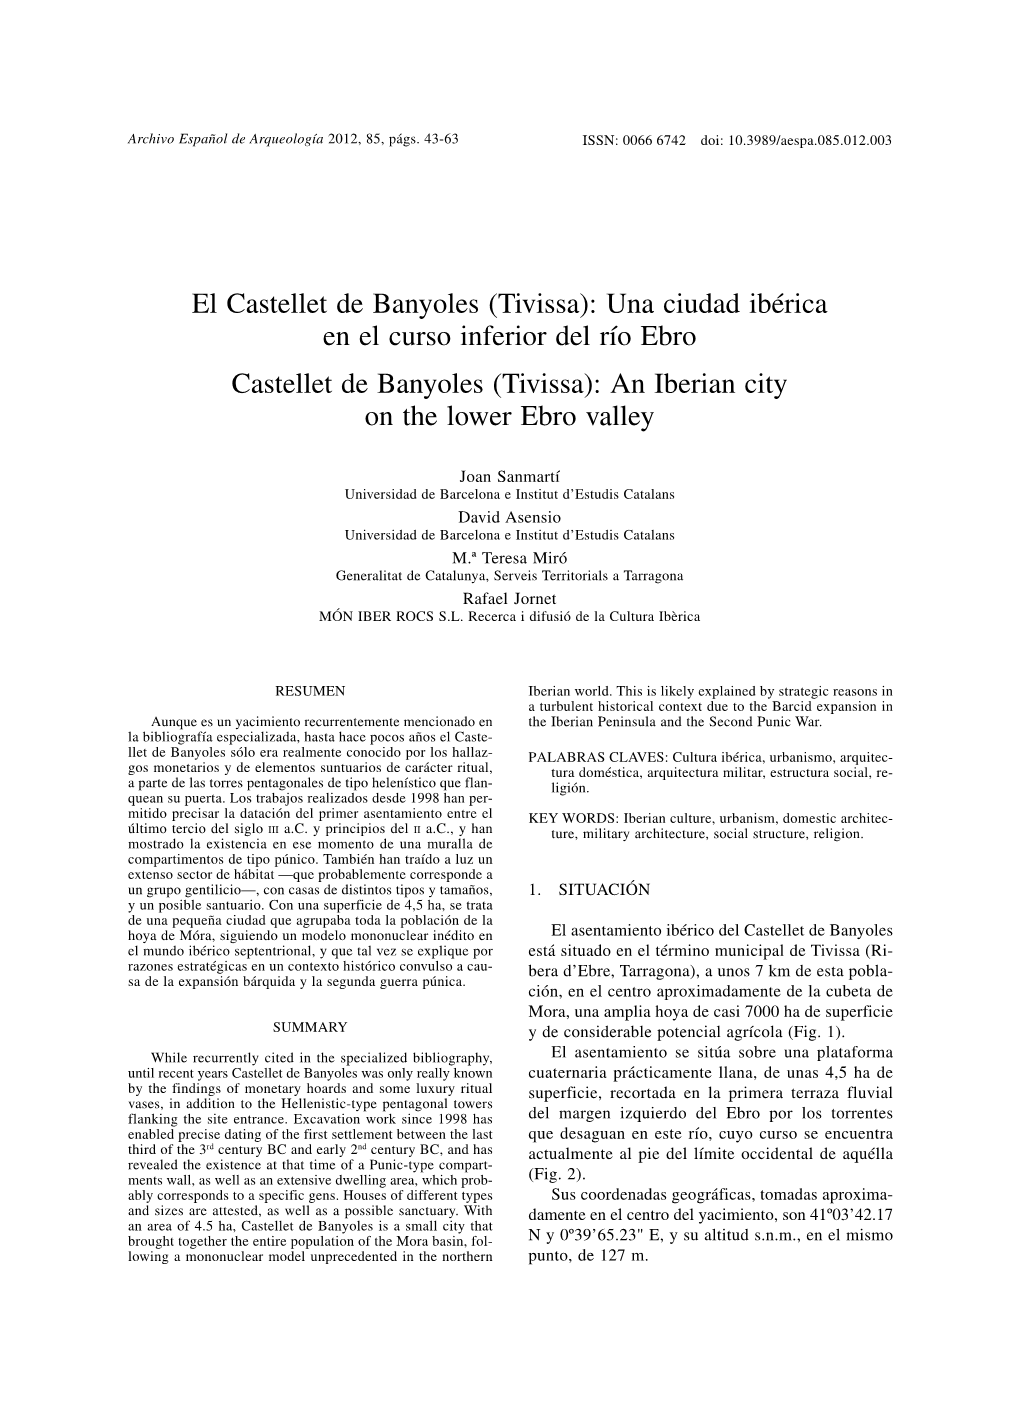 El Castellet De Banyoles (Tivissa): Una Ciudad Ibérica En El Curso Inferior Del Río Ebro ; Castellet De Banyoles (Tivissa): An